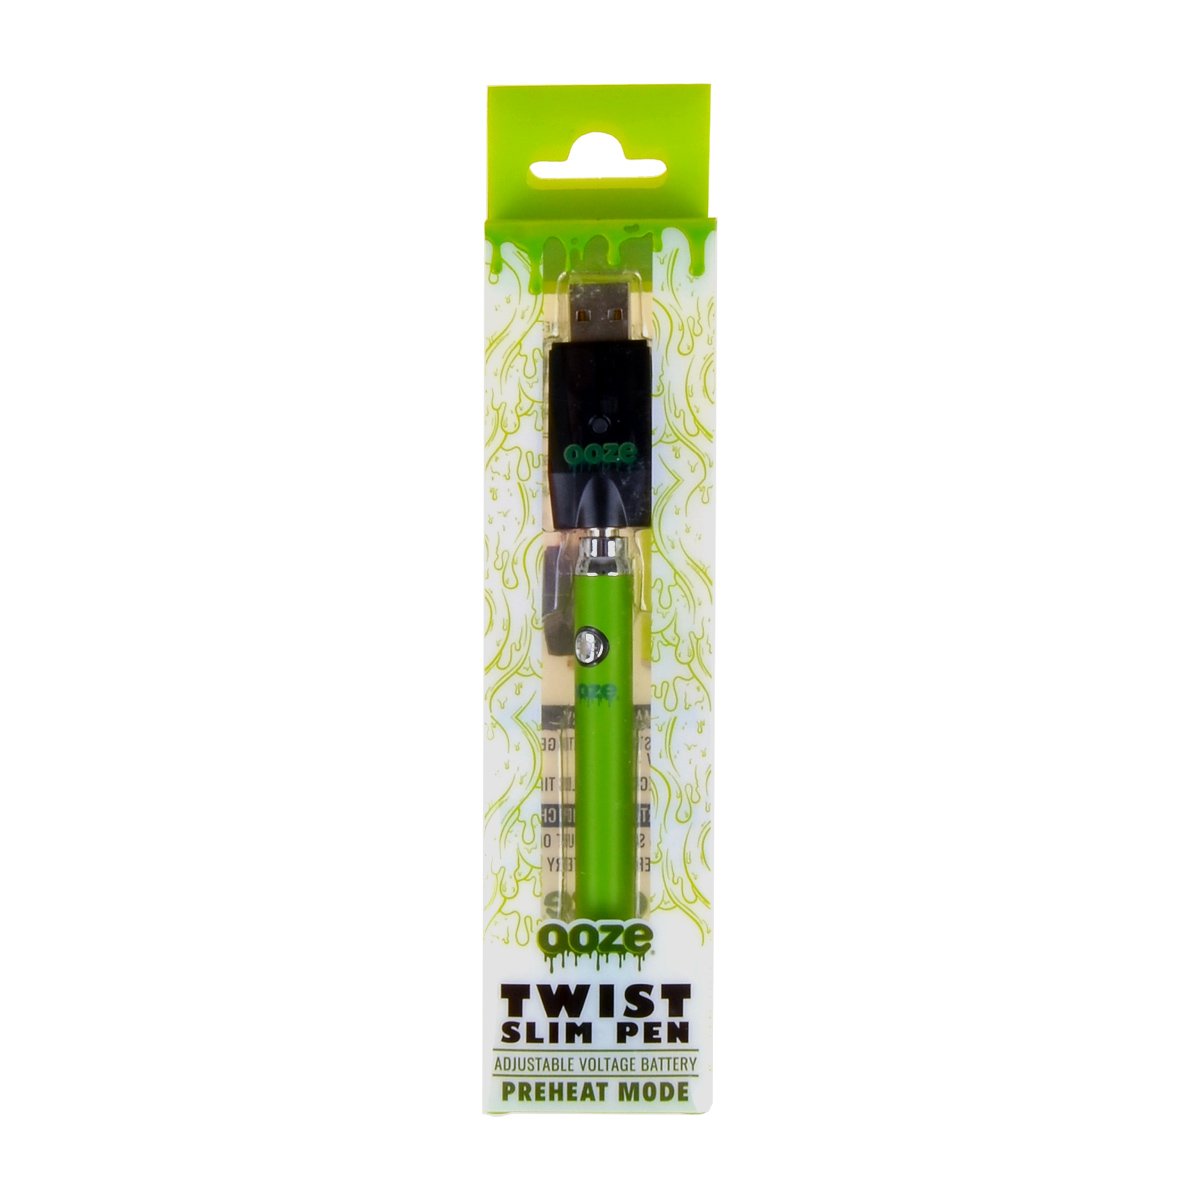 Ooze Green Slim Pen Twist Battery